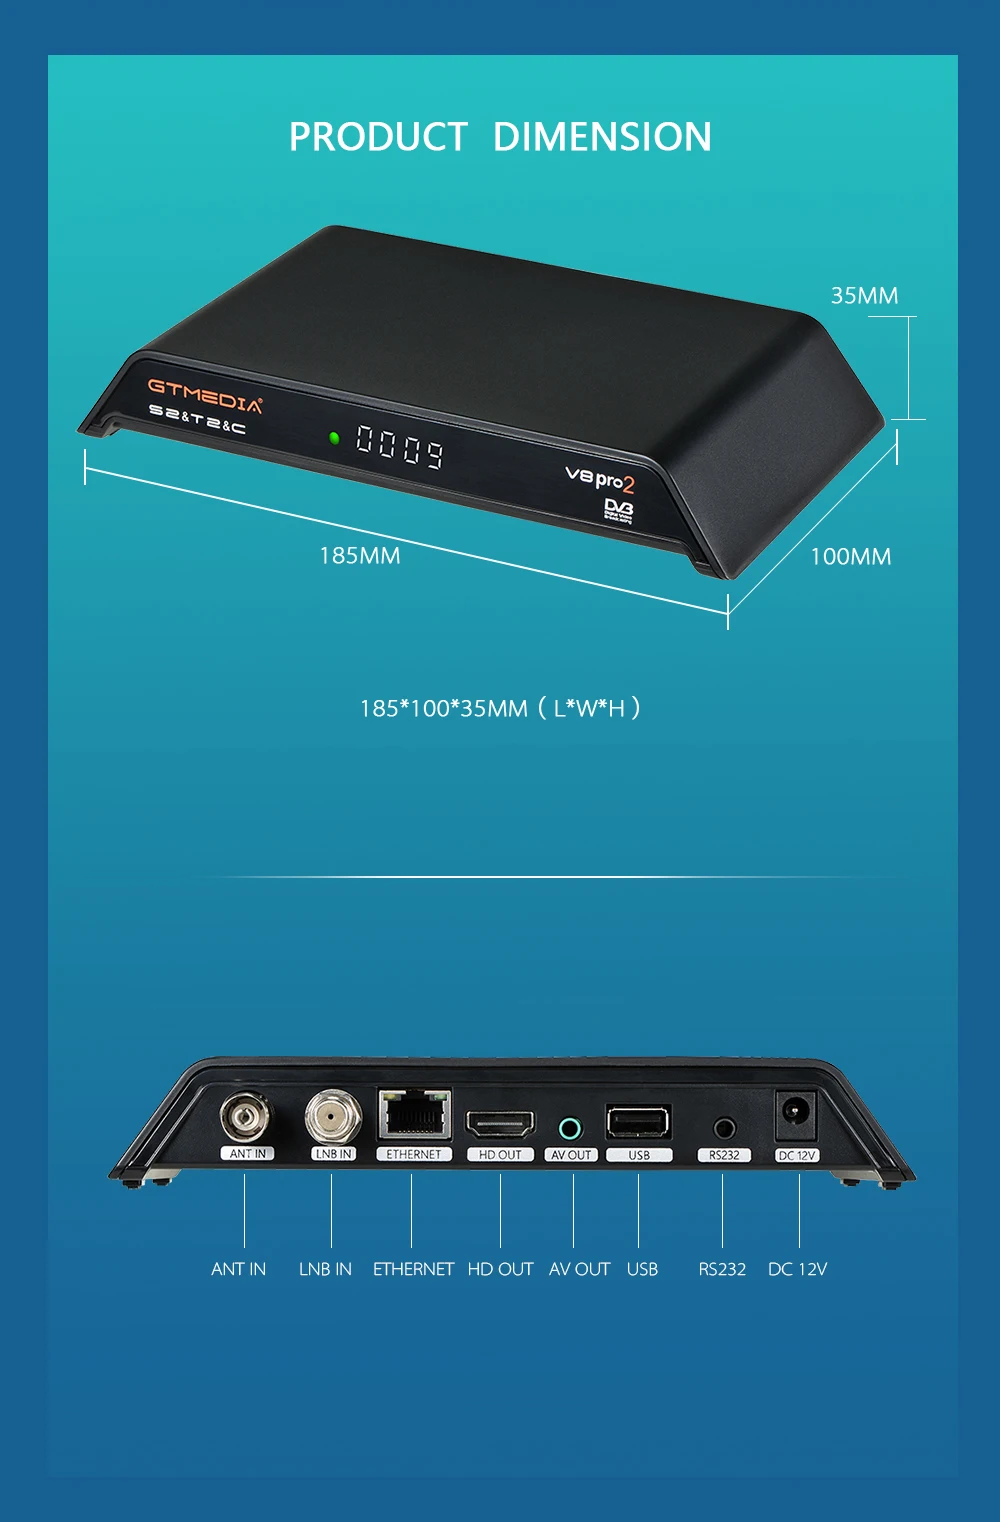 GTmedia V8 Pro2 декодер DVB-S2/T2Cable DVB-S2X встроенный WiFi H.265 Поддержка IP tv CCCAM PowerVu Biss ключ спутниковый ресивер ТВ коробка